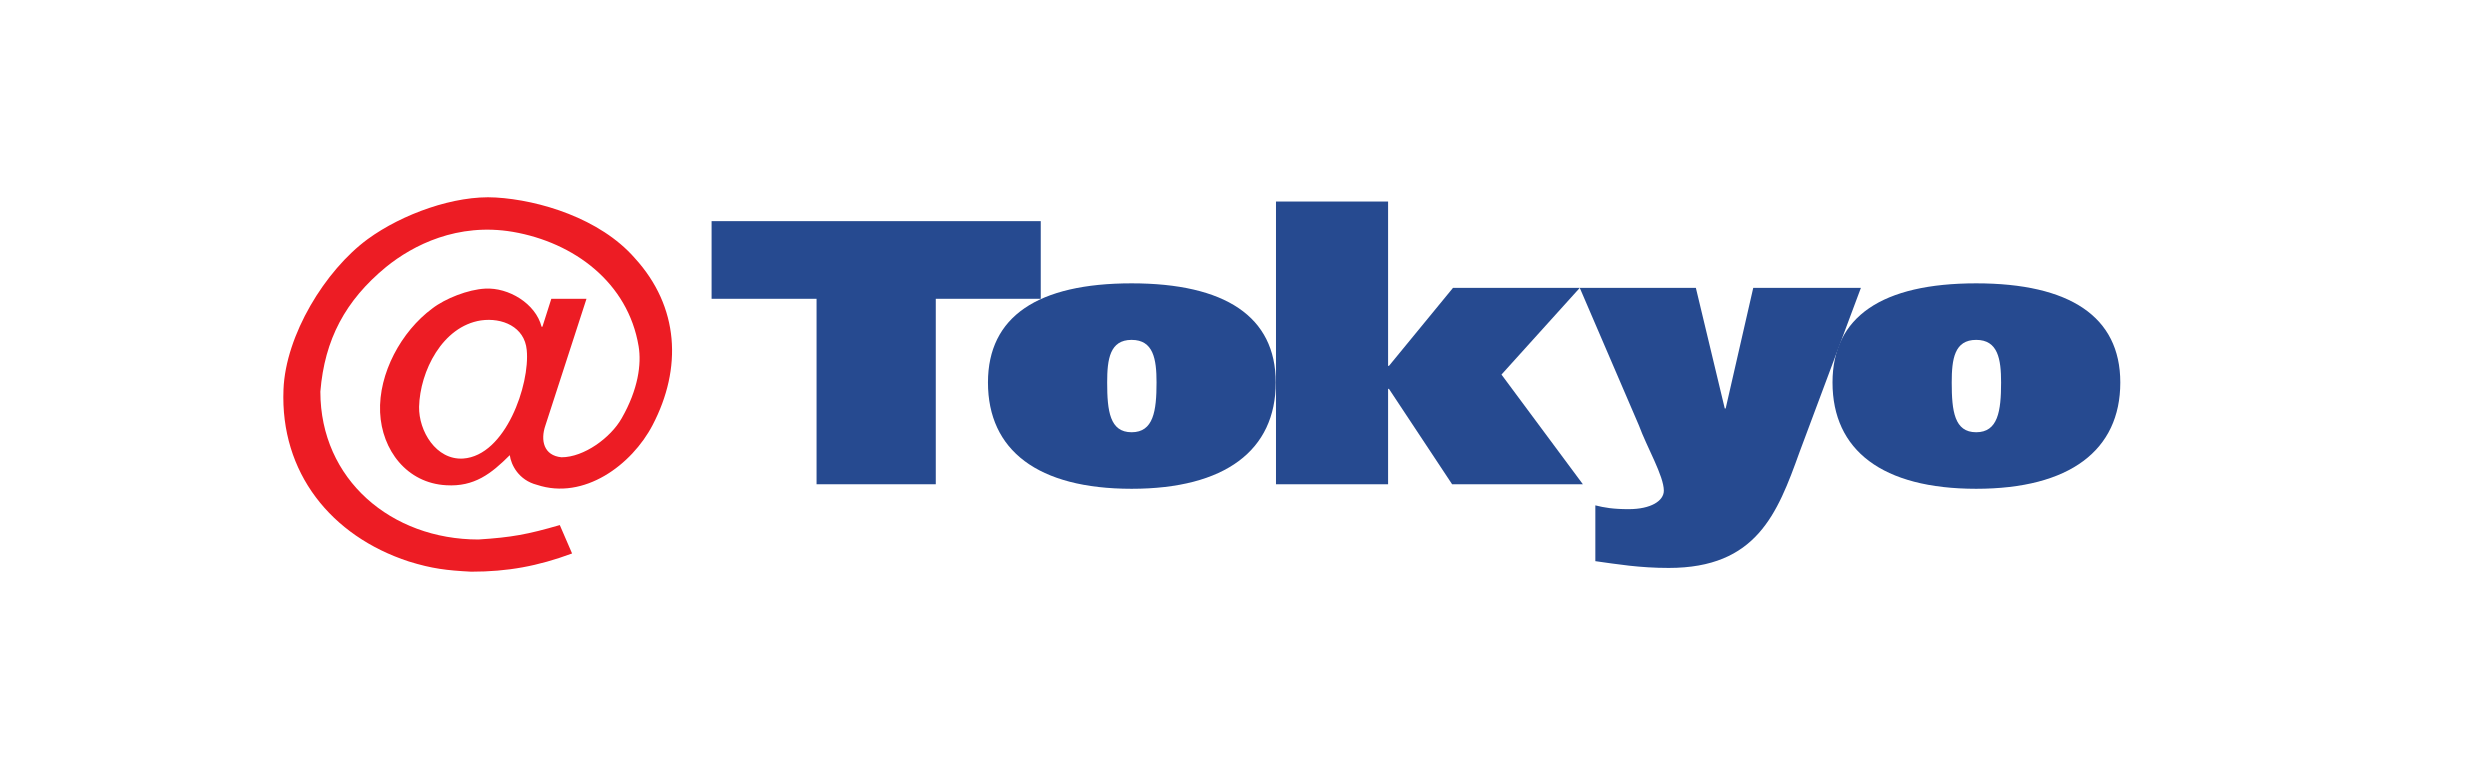 at_tokyo